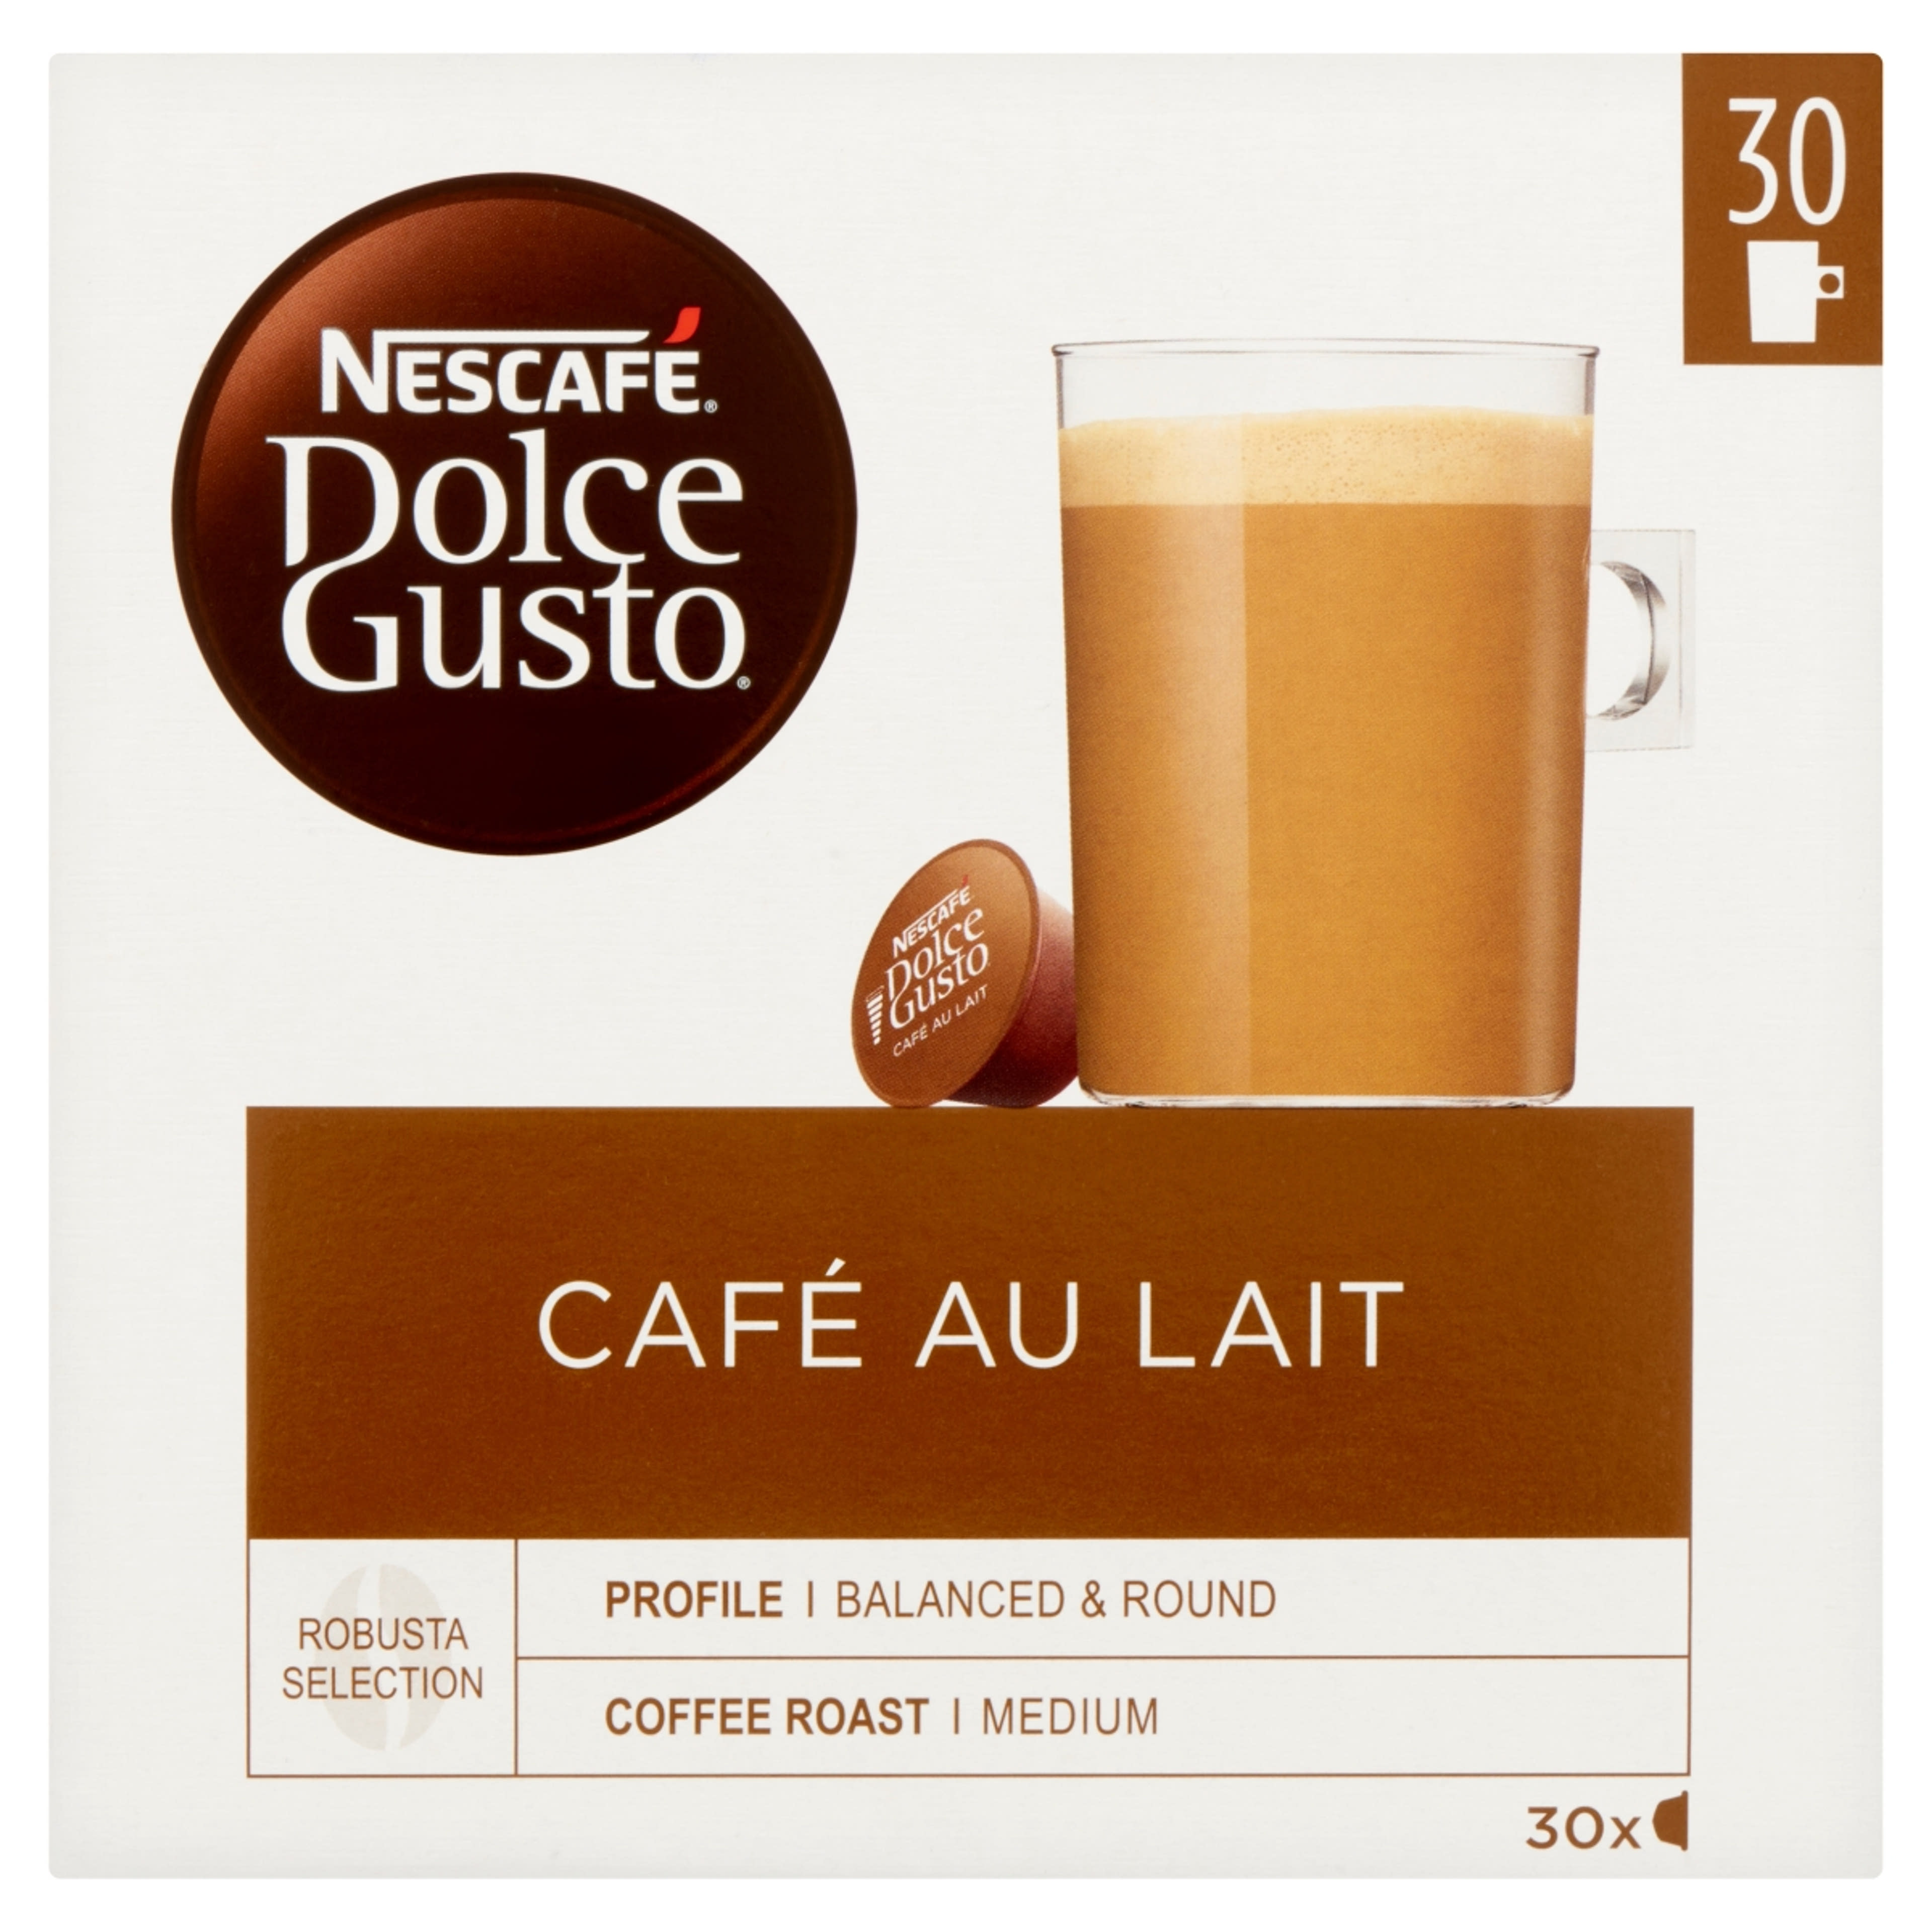 Nescafe Dolce Gusto cafe aulait 30 db kapszula - 300 g